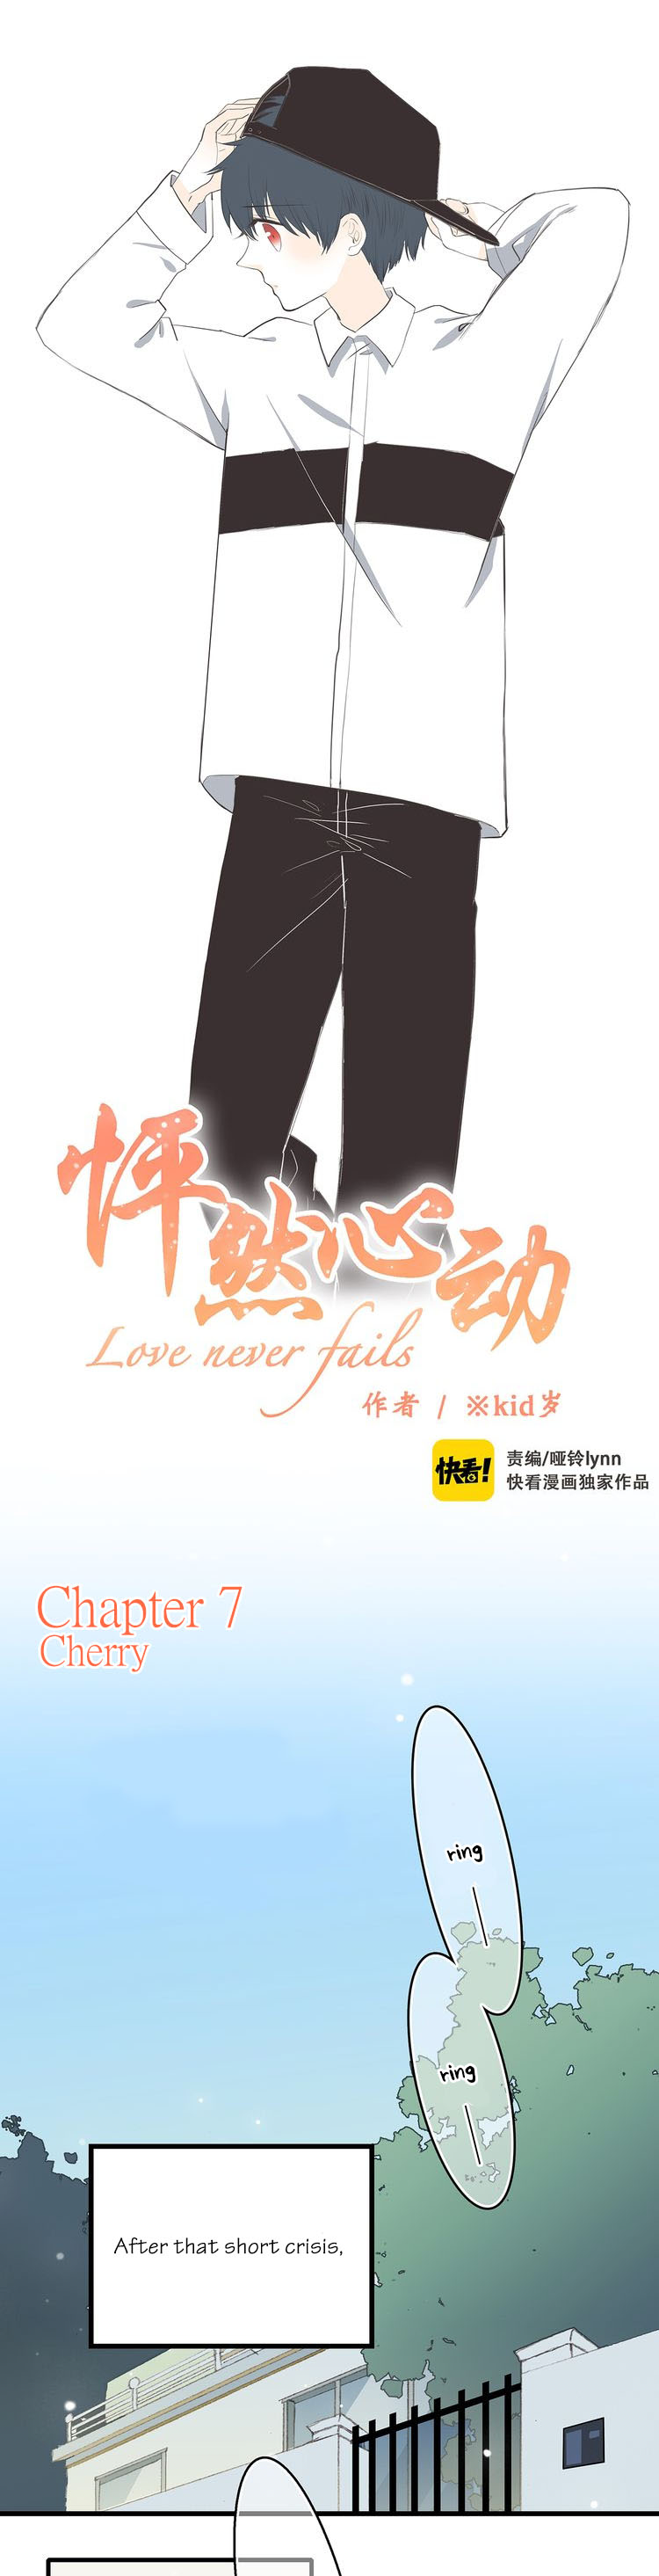 Love Never Fails Ch. 7 Cherry